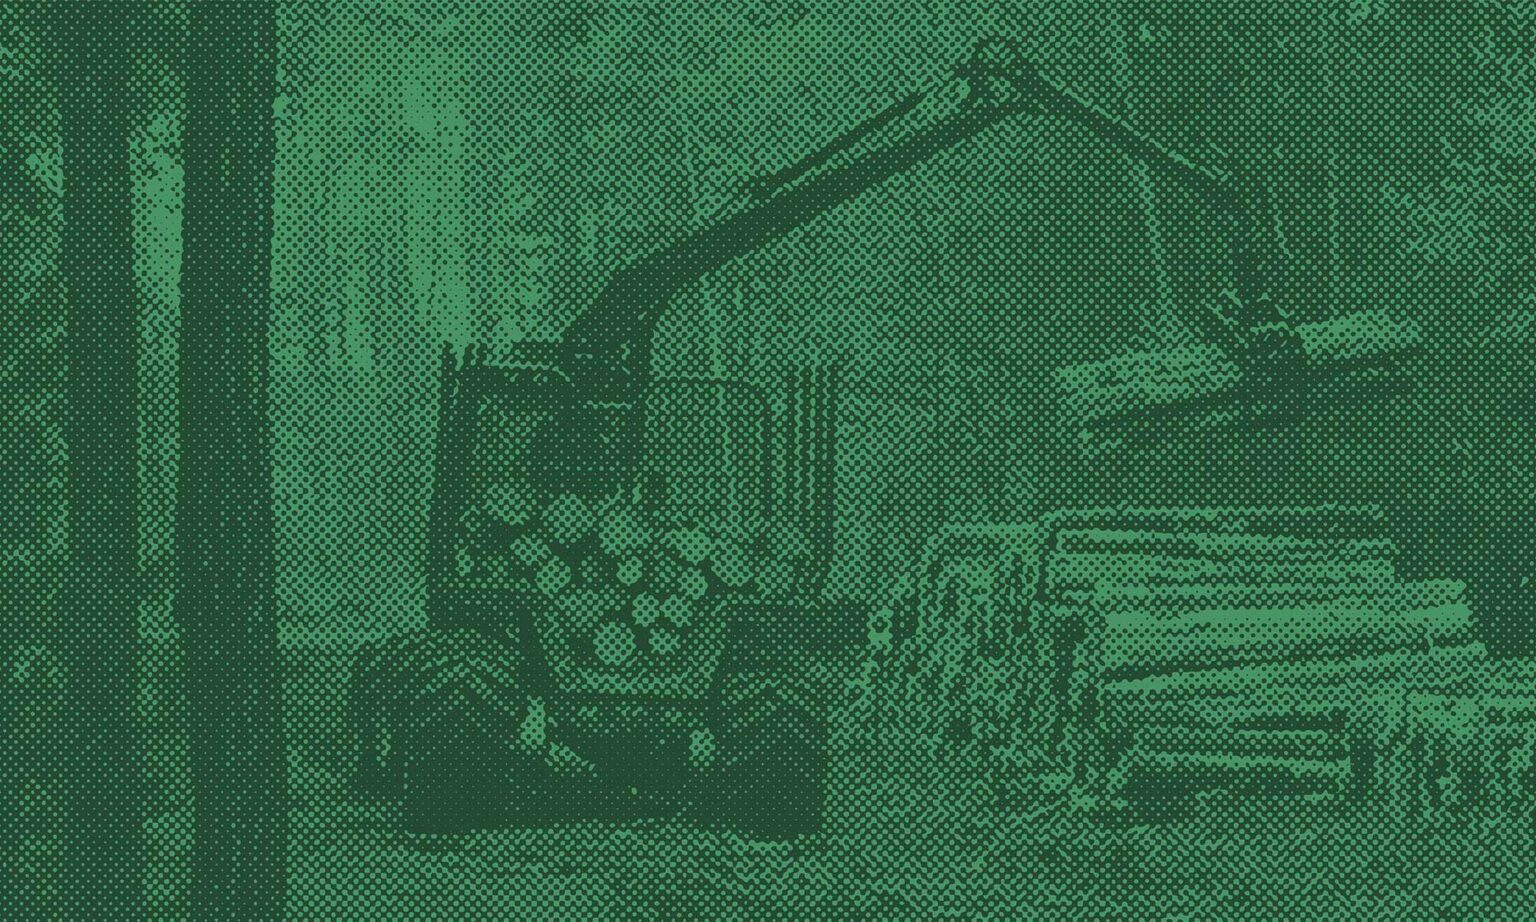 Skogsmaskin som lastar timmer i skogen